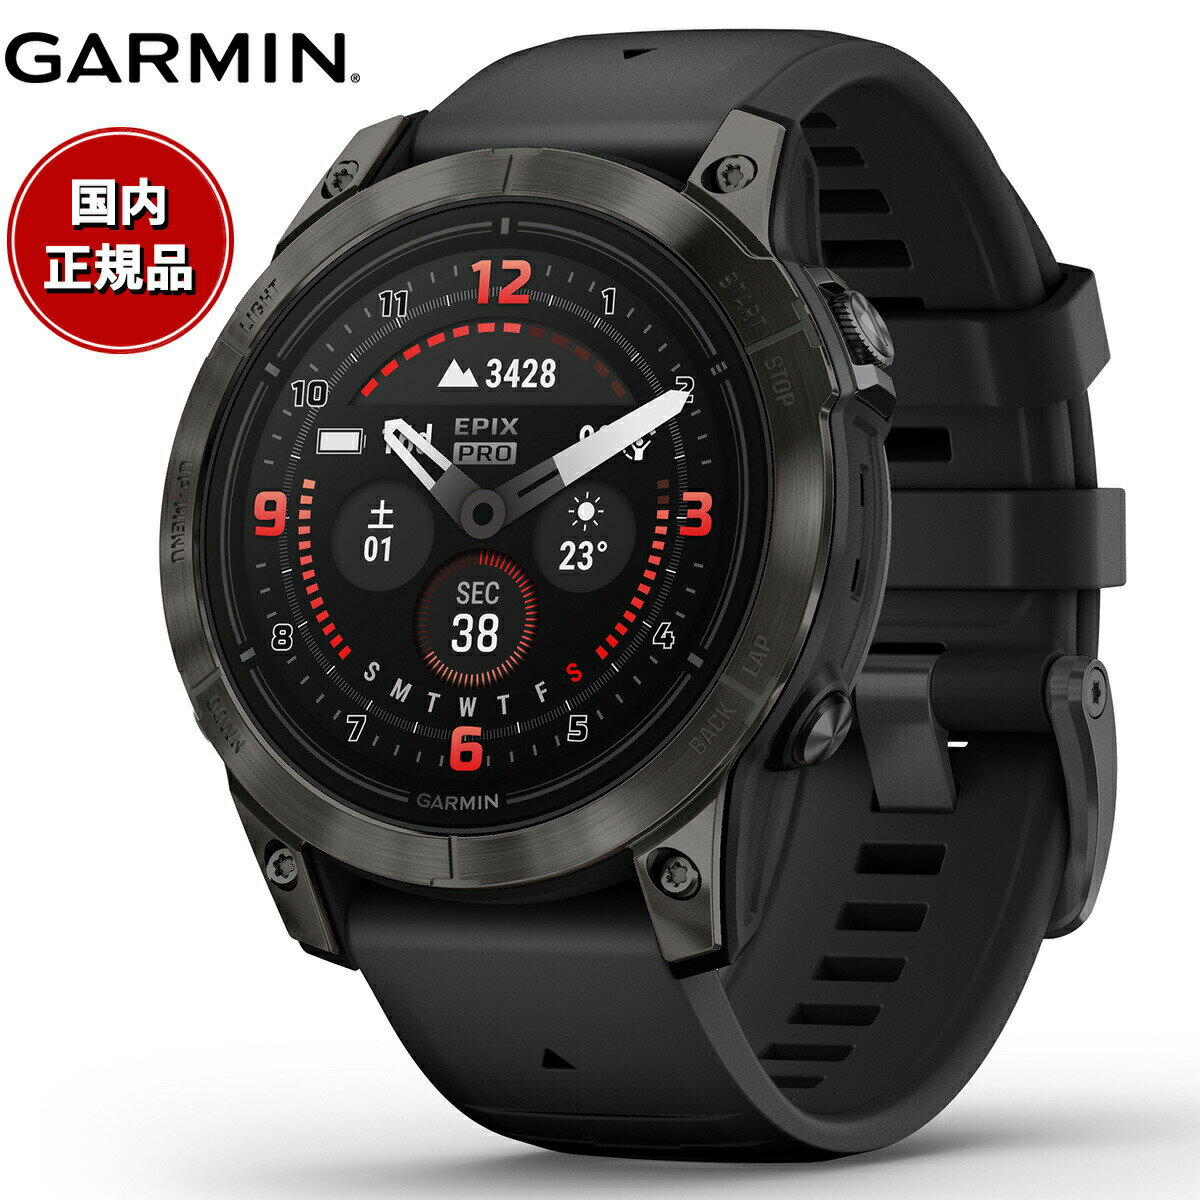 【24回分割手数料無料 】ガーミン GARMIN epix Pro Gen 2 47mm Sapphire エピックス プロ サファイヤ 010-02803-52 Ti Carbon Gray DLC / Black GPS スマートウォッチ 腕時計